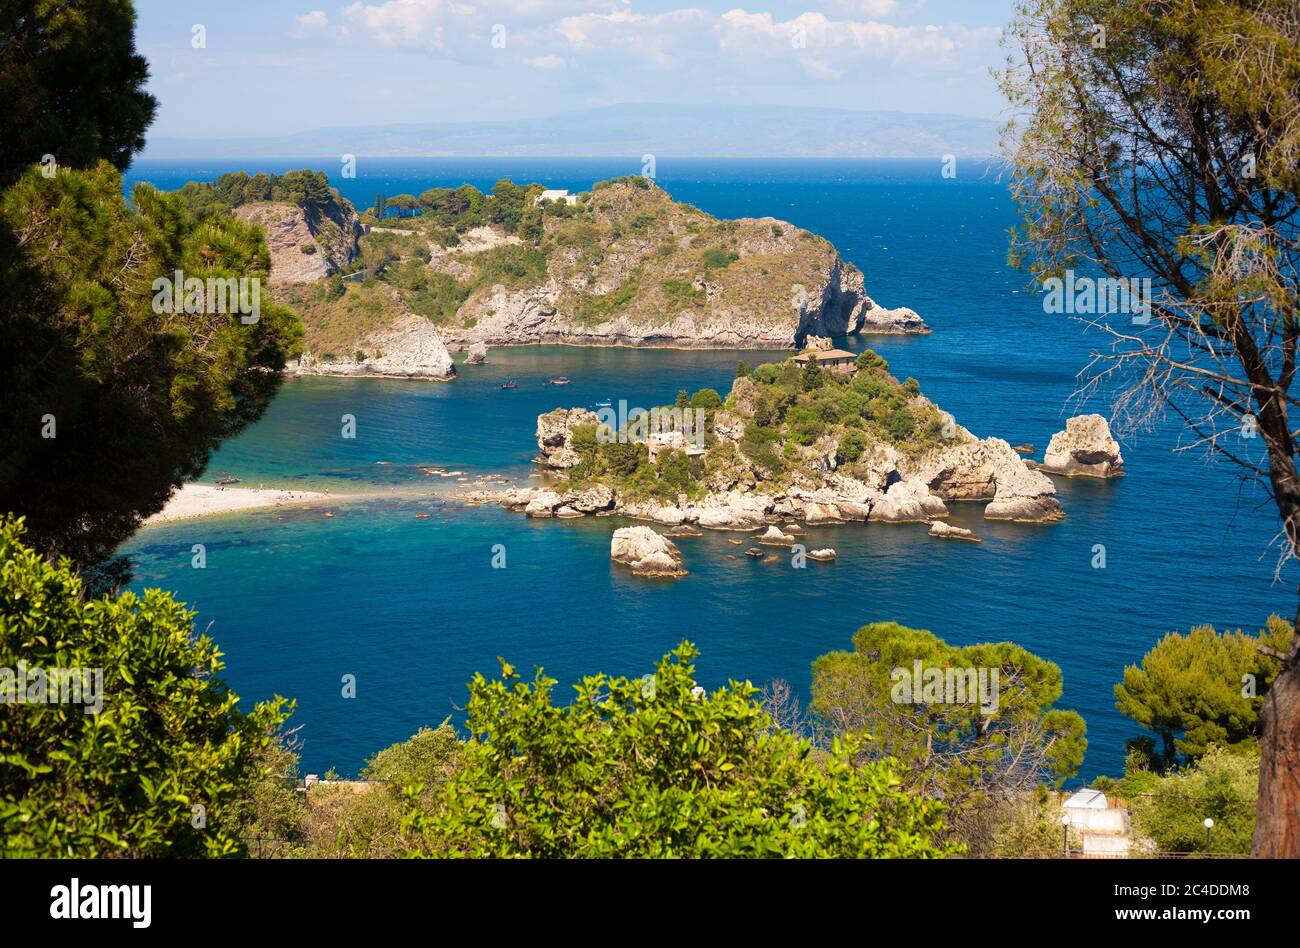 The famous Isola Bella island at Taormina, Italy Stock Photo